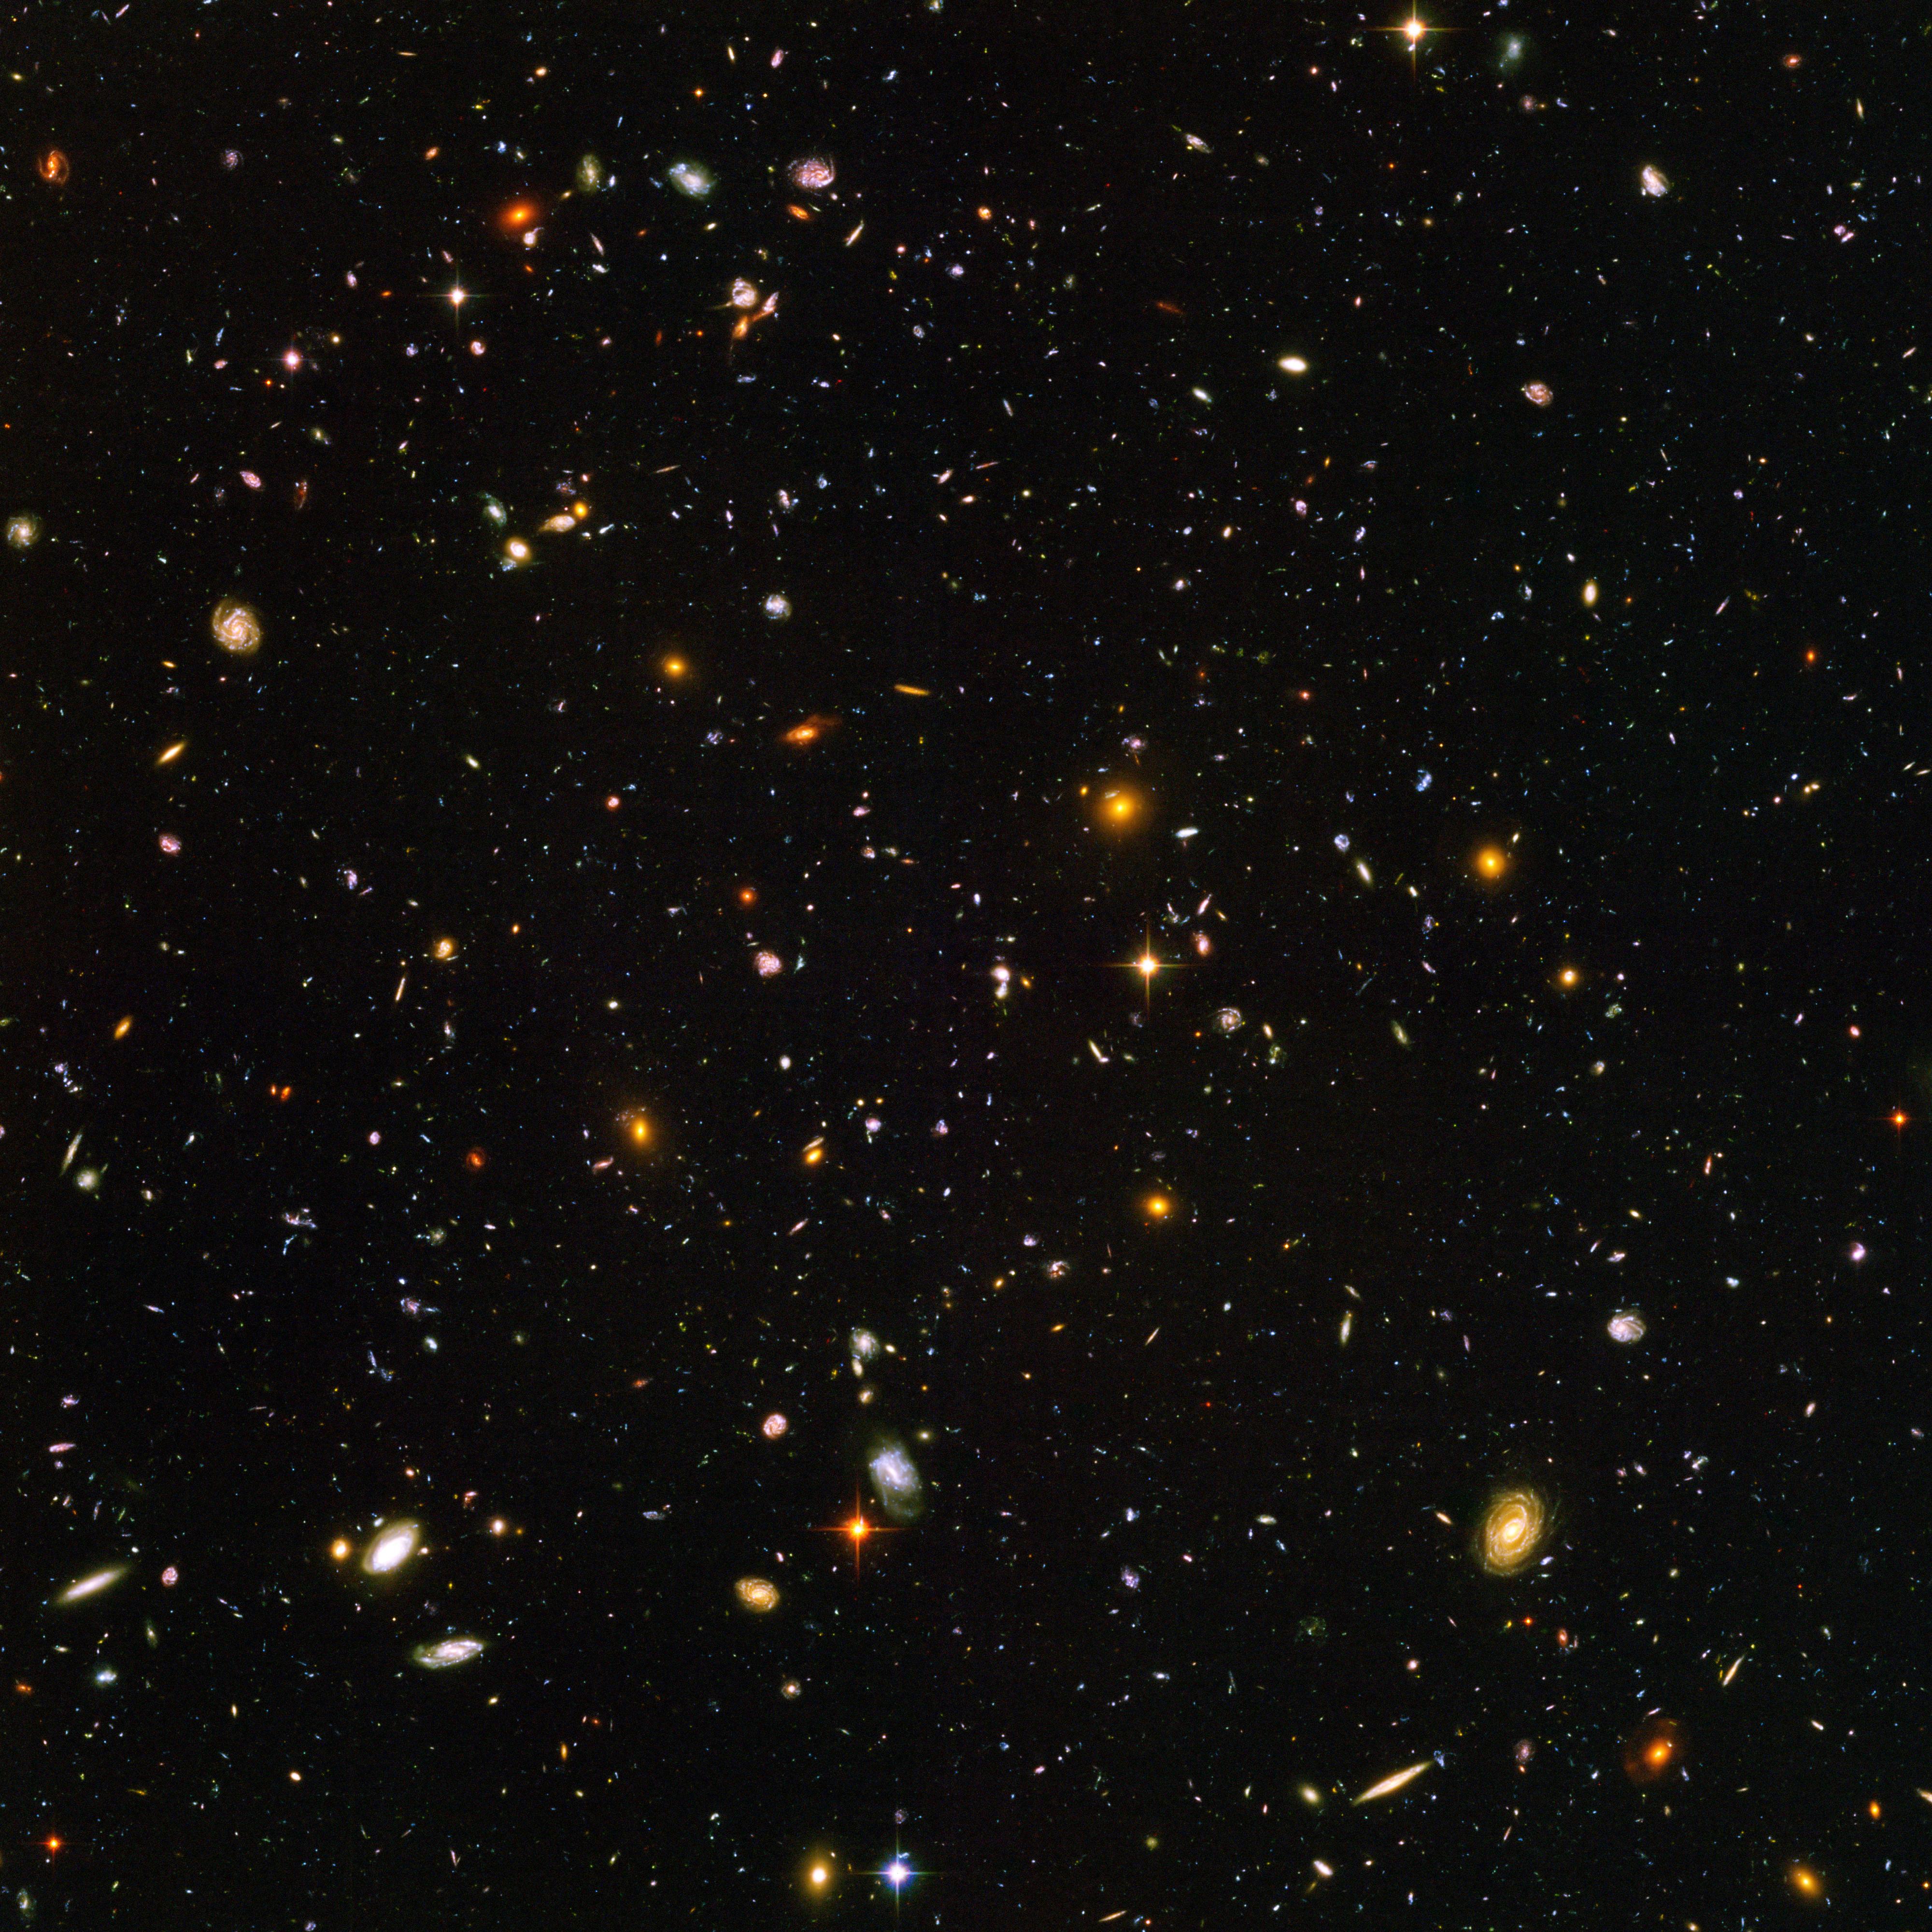 Cette vue de près de 10'000 galaxies est appelée le "Hubble Ultra Deep Field" et comprend des galaxies d'âges, de tailles, de formes et de couleurs variées. Les plus petites et les plus rouges, environ une centaine, pourraient être parmi les plus lointaines connues, existant lorsque l'Univers n'avait que 800 millions d'années. Les galaxies les plus proches – les spirales et les elliptiques, plus grandes, plus brillantes et bien définies – se sont développées il y a environ 1 milliard d'années, lorsque le Cosmos avait 13 milliards d'années. L'image a nécessité 800 expositions prises au cours de 400 orbites de Hubble autour de la Terre. La durée totale d'exposition a été de 11,3 jours, entre le 24 septembre 2003 et le 16 janvier 2004. [NASA/ESA - S. Beckwith (STScI) and the HUDF Team]